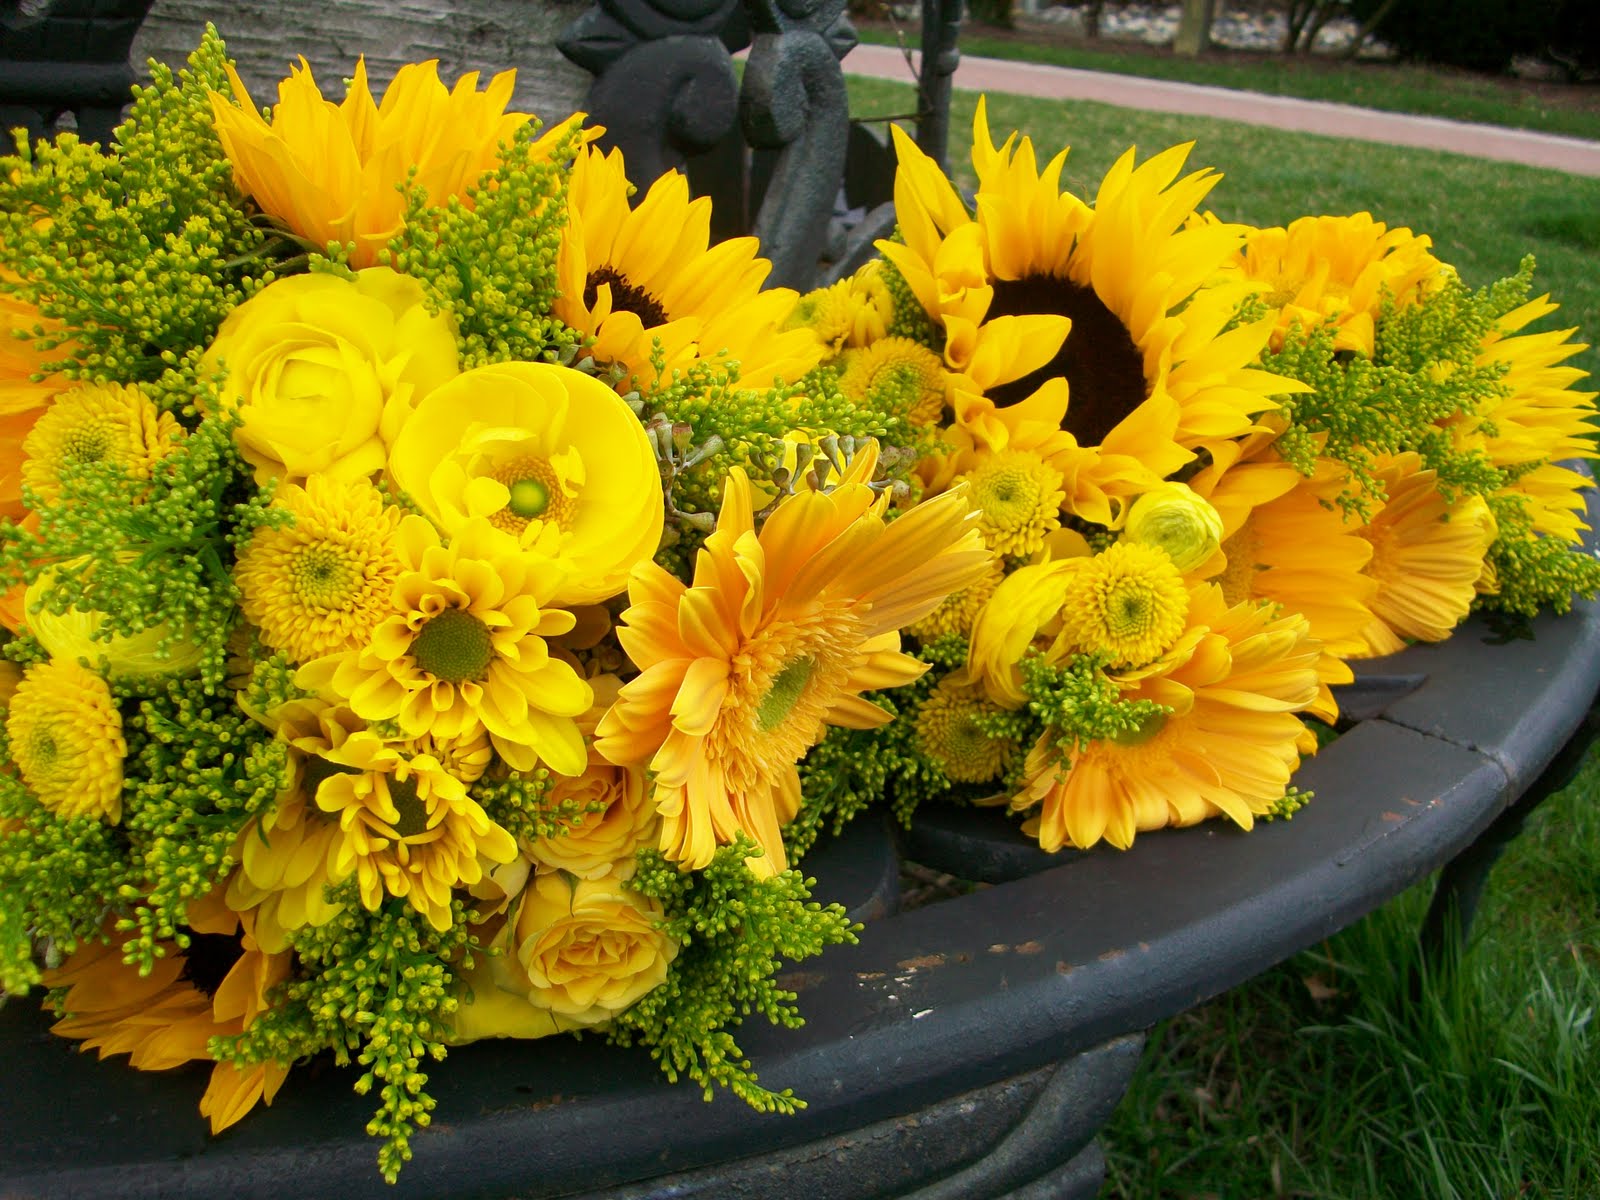 Labels: sunflower wedding